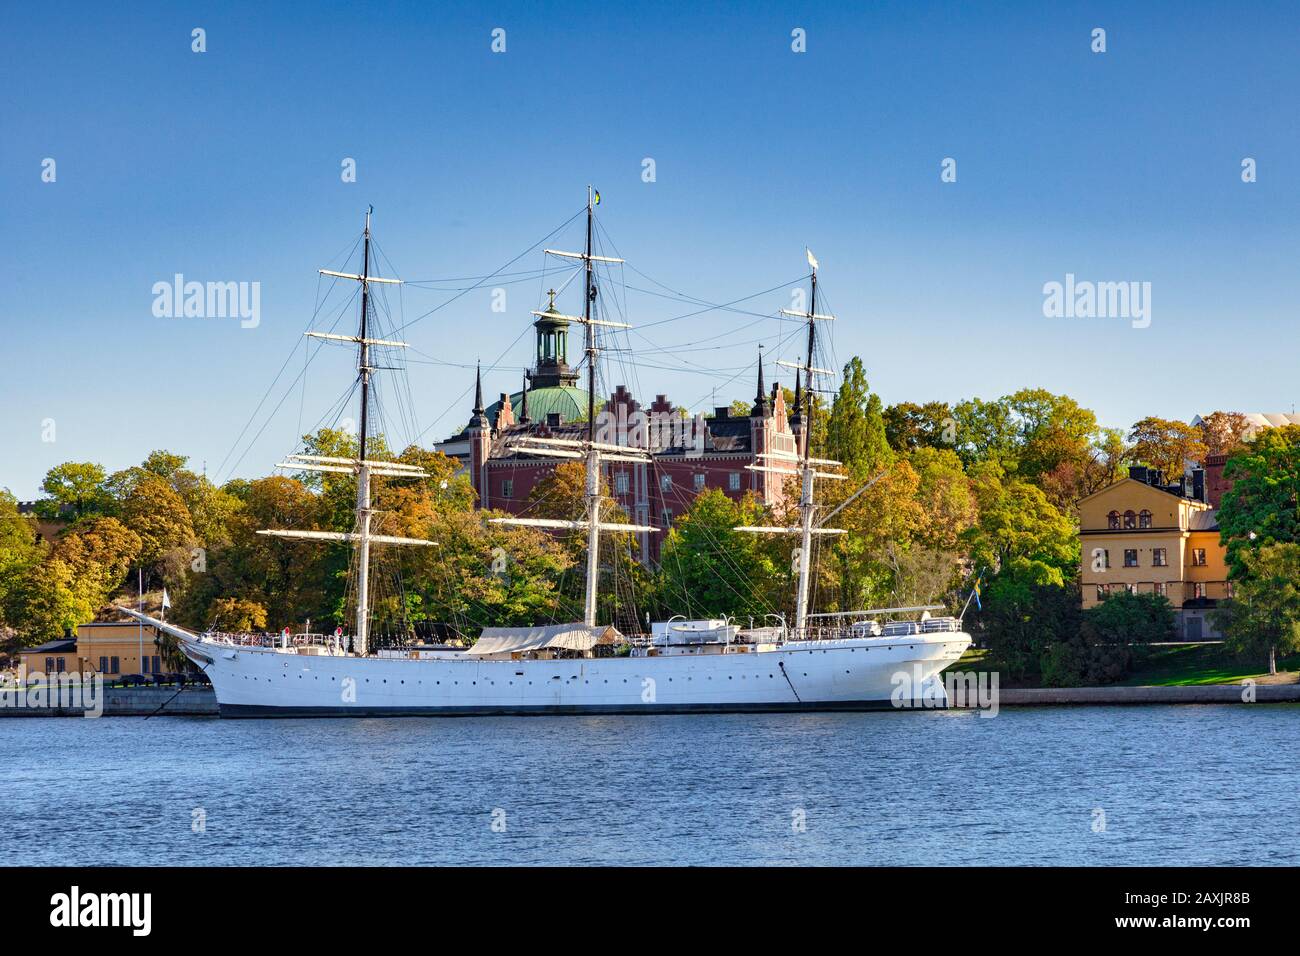 16. September 2018: Stockholm, Schweden - AF Chapman, ein vollgetakeltes Stahlschiff, das am westlichen Ufer des Inselchen Skeppsholmen festgemacht ist, das als... Stockfoto